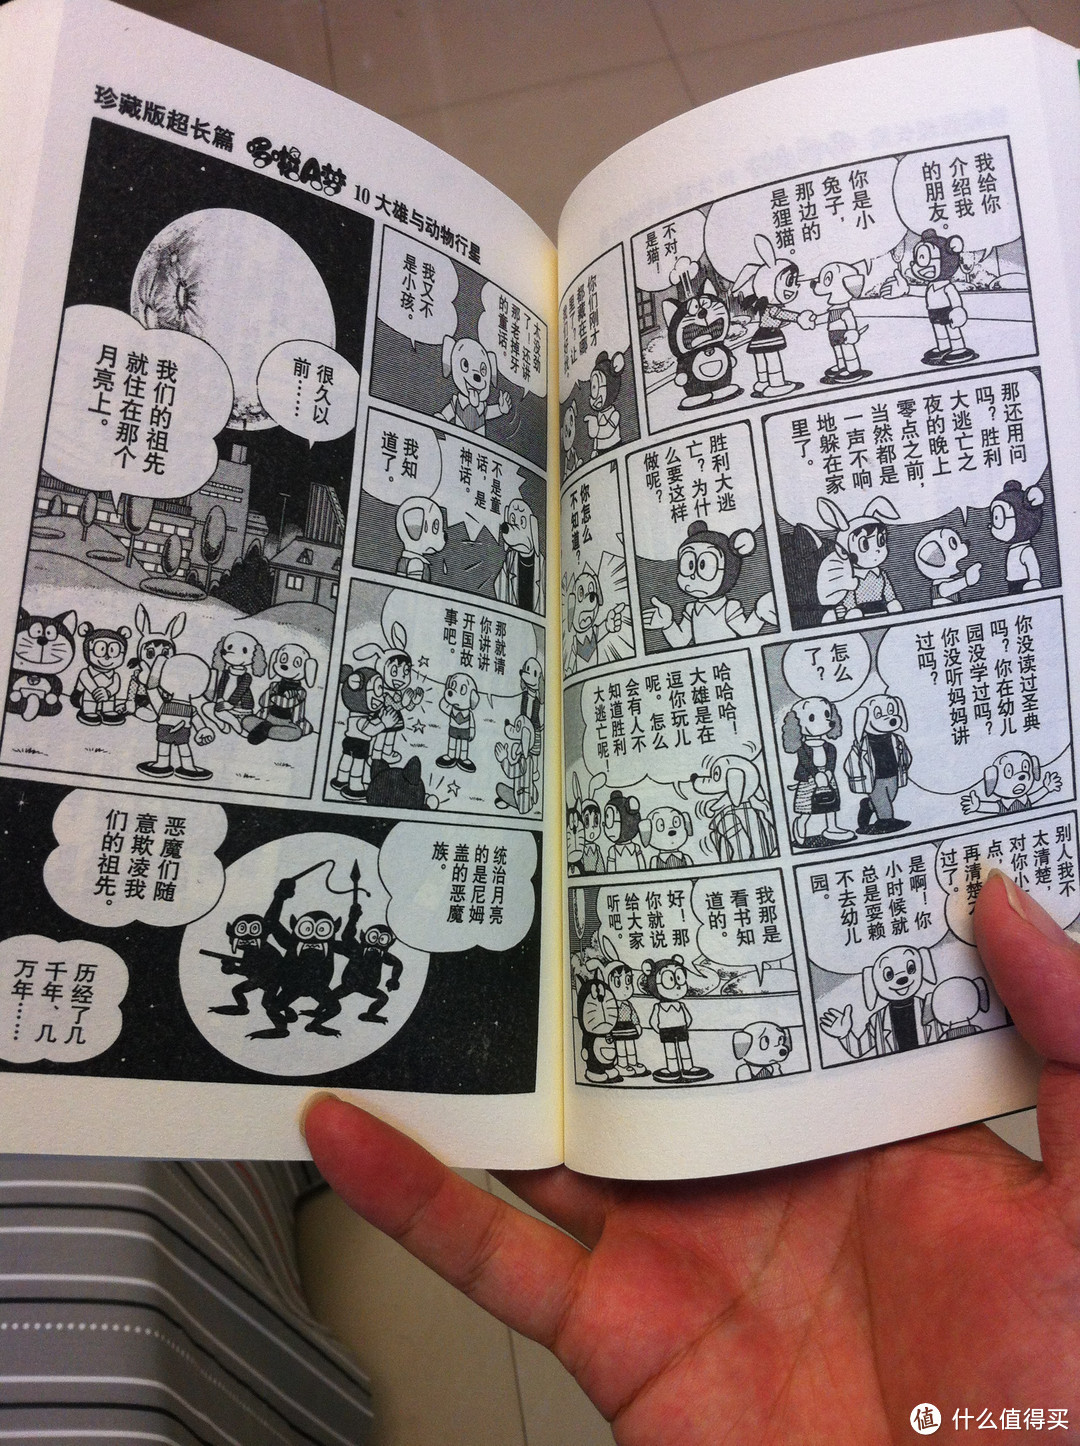 《哆啦A梦 珍藏版》 漫画书，说说关于藤子不二雄和哆啦A梦的那些事儿